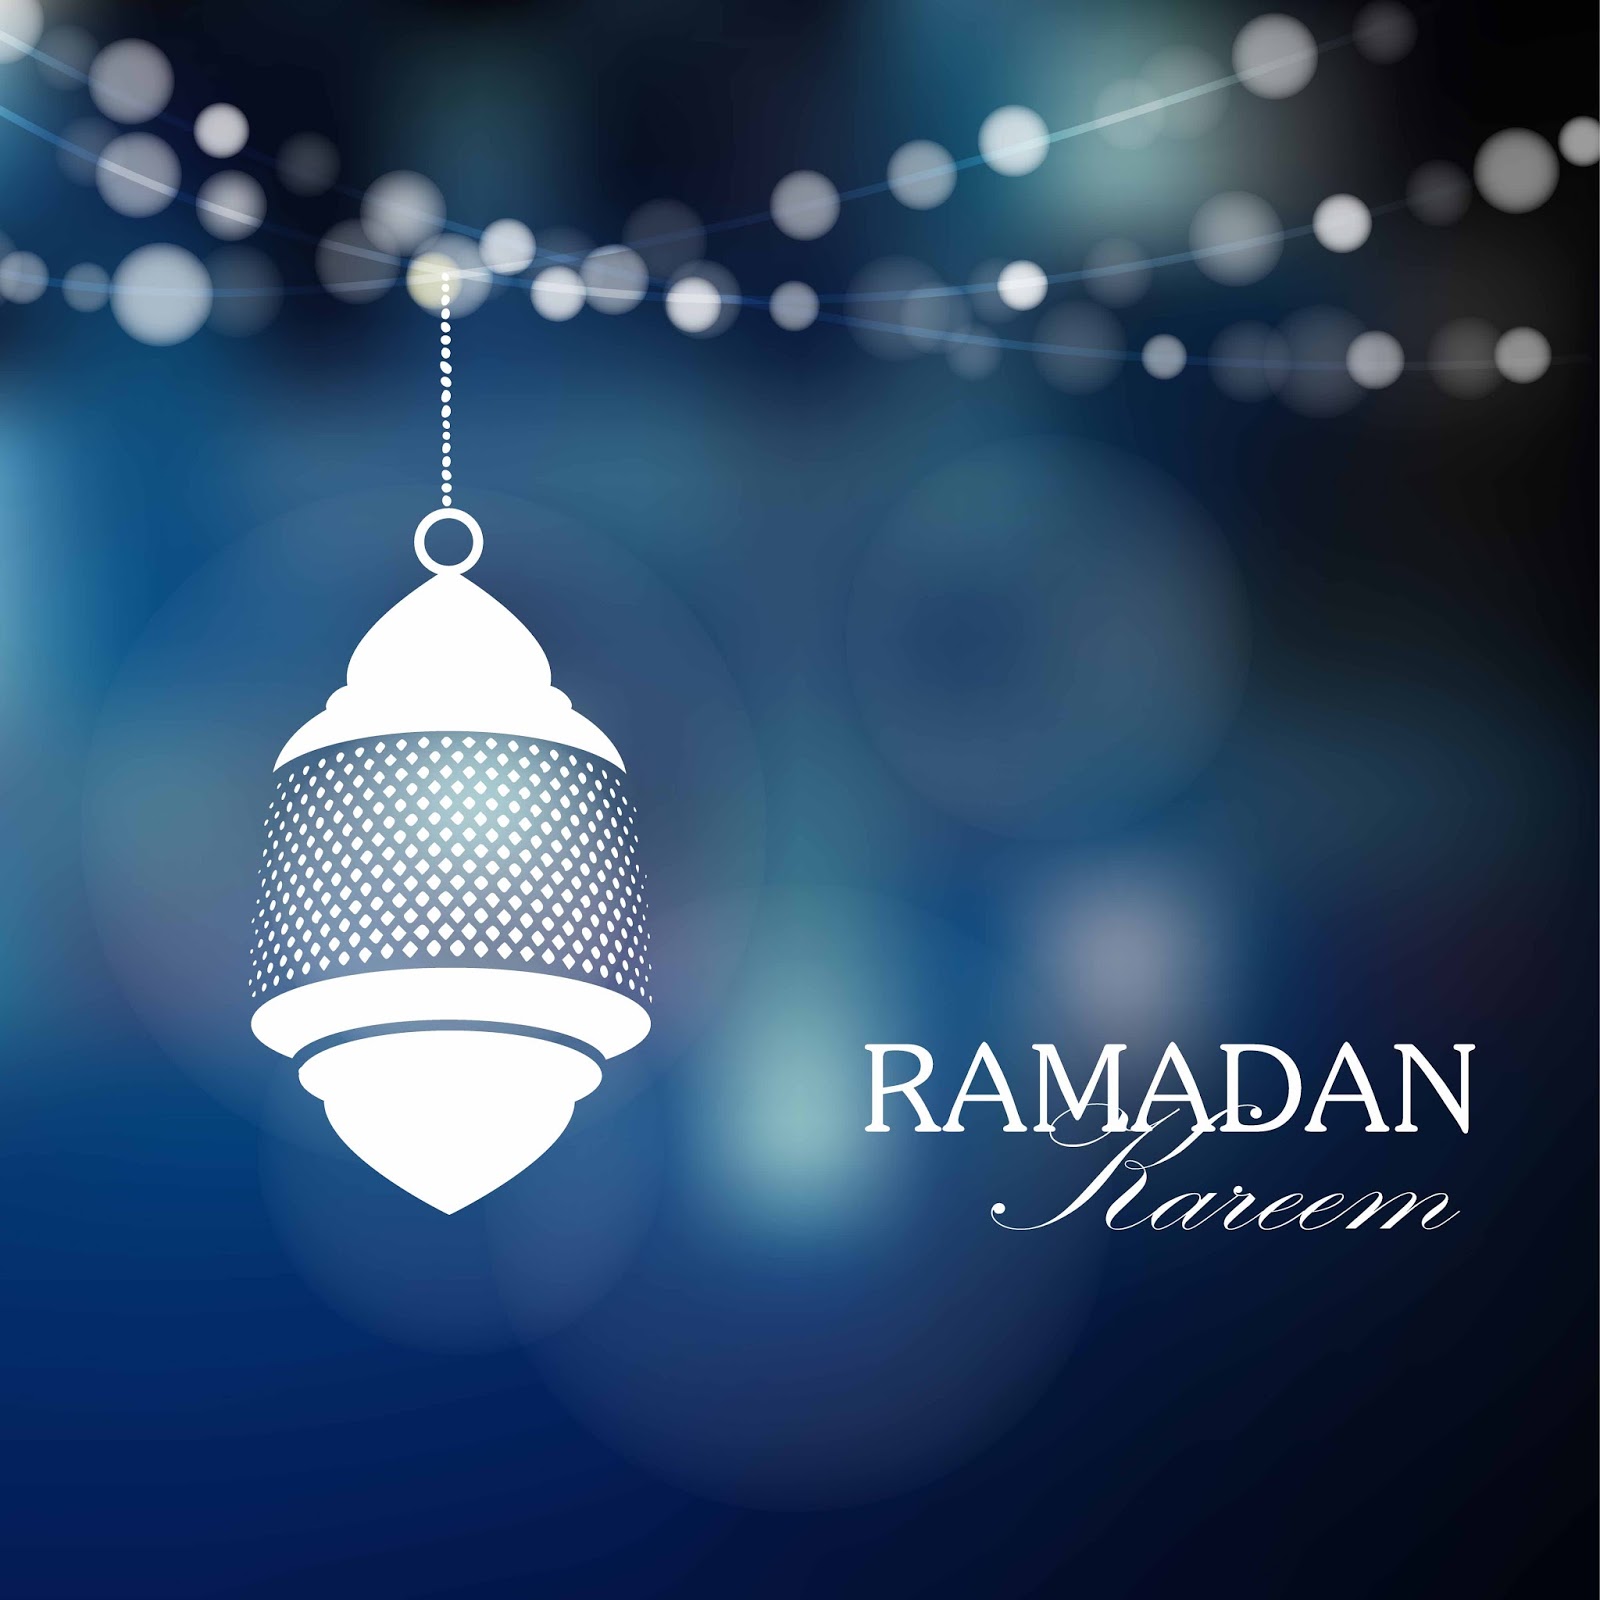 ramadan-logo-vector-hd-images-ramadan-icon-logo-vector-logo-icons